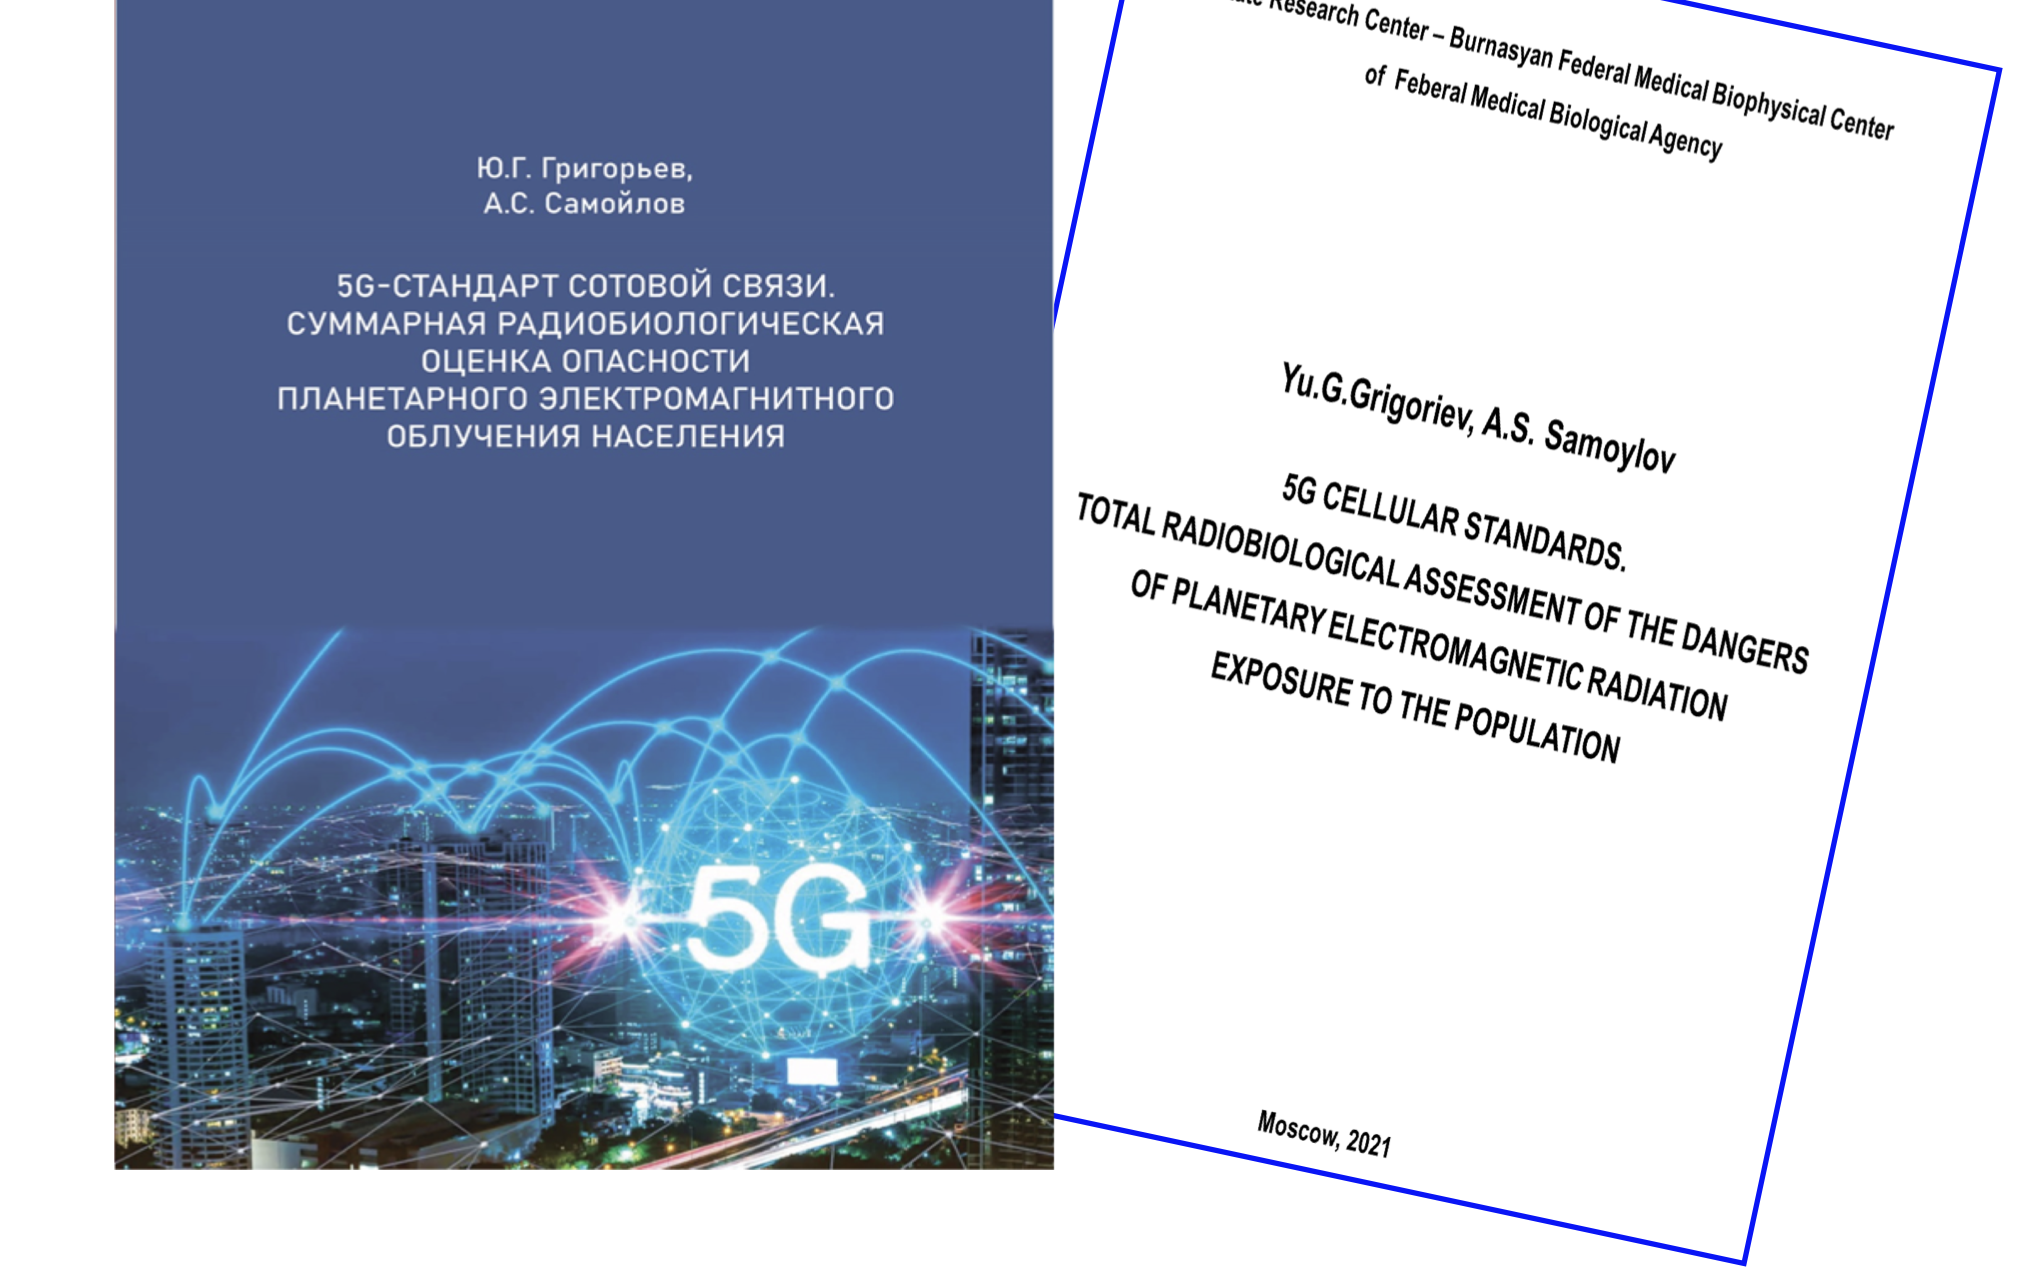 Yuri Grigoriev's 5G Book